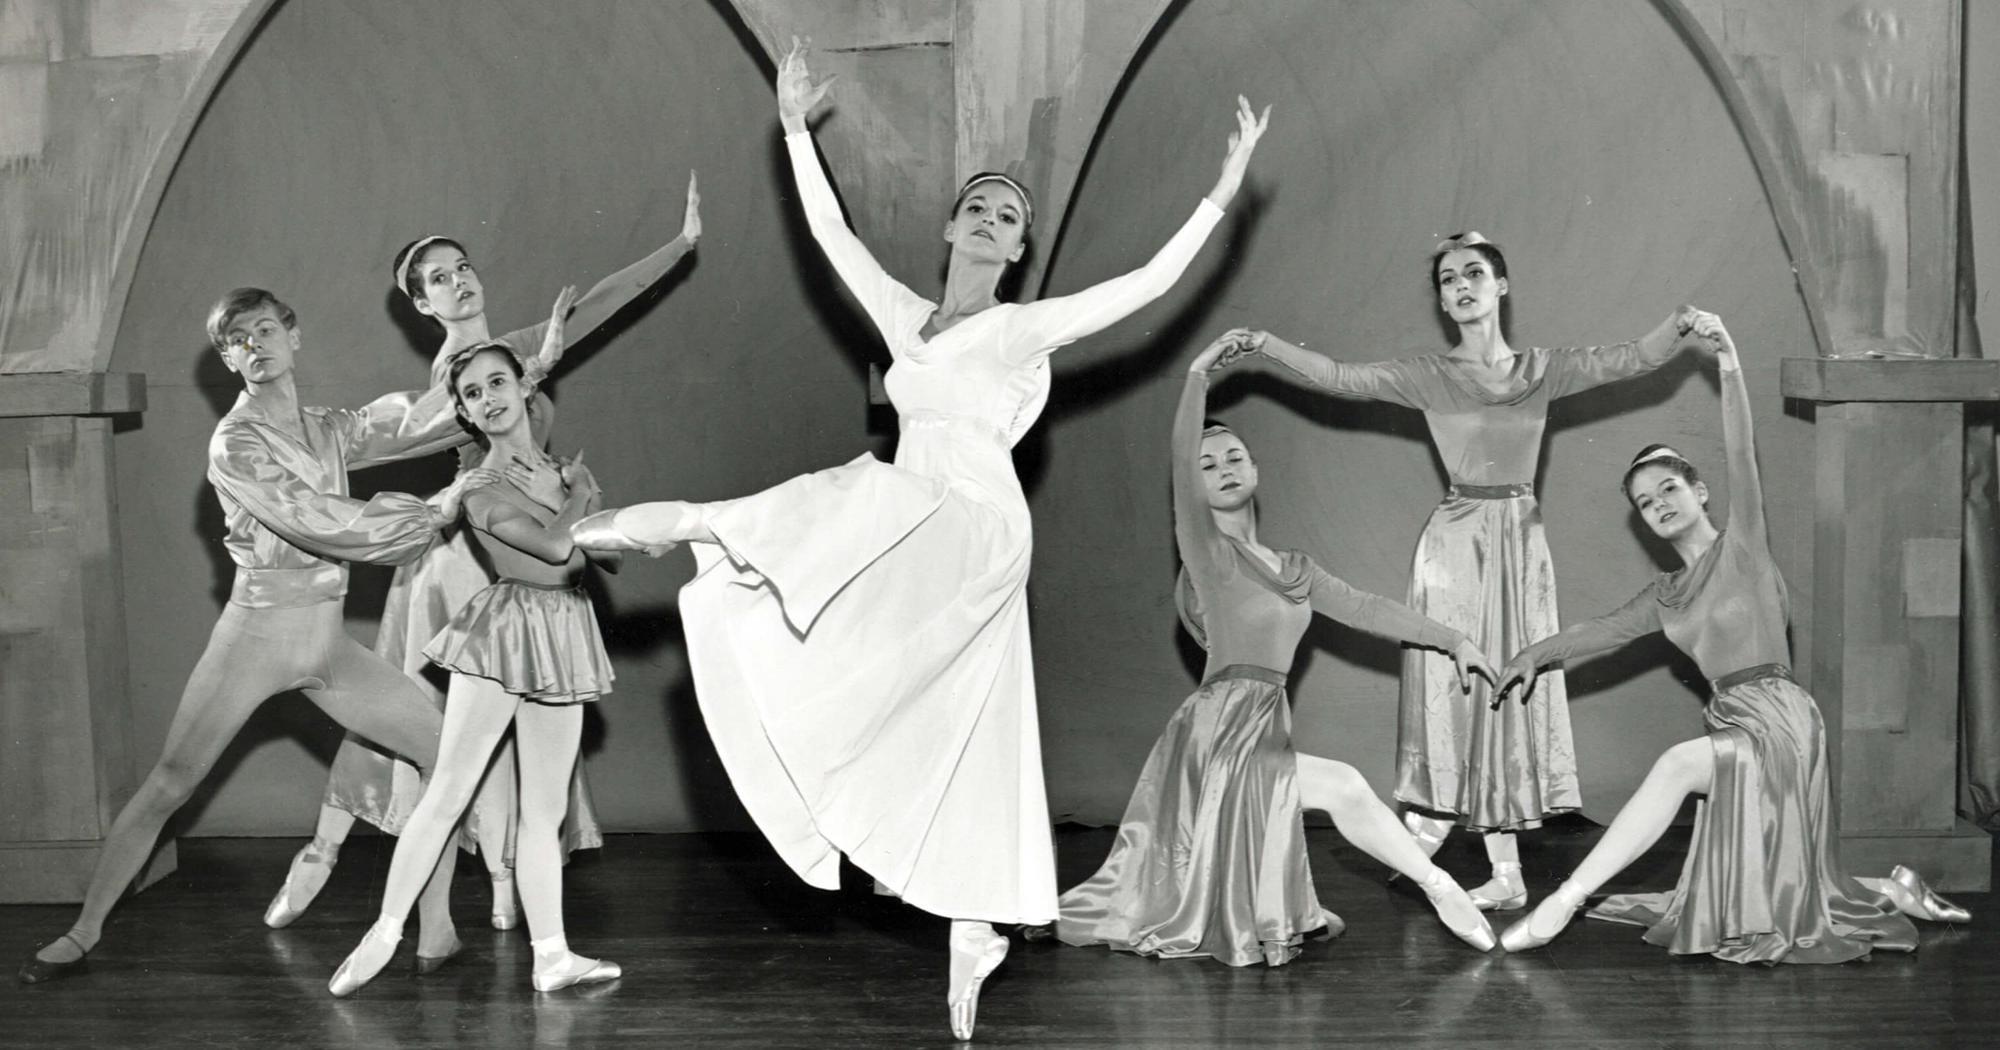 黑白图像描绘了20世纪60年代的芭蕾舞. 